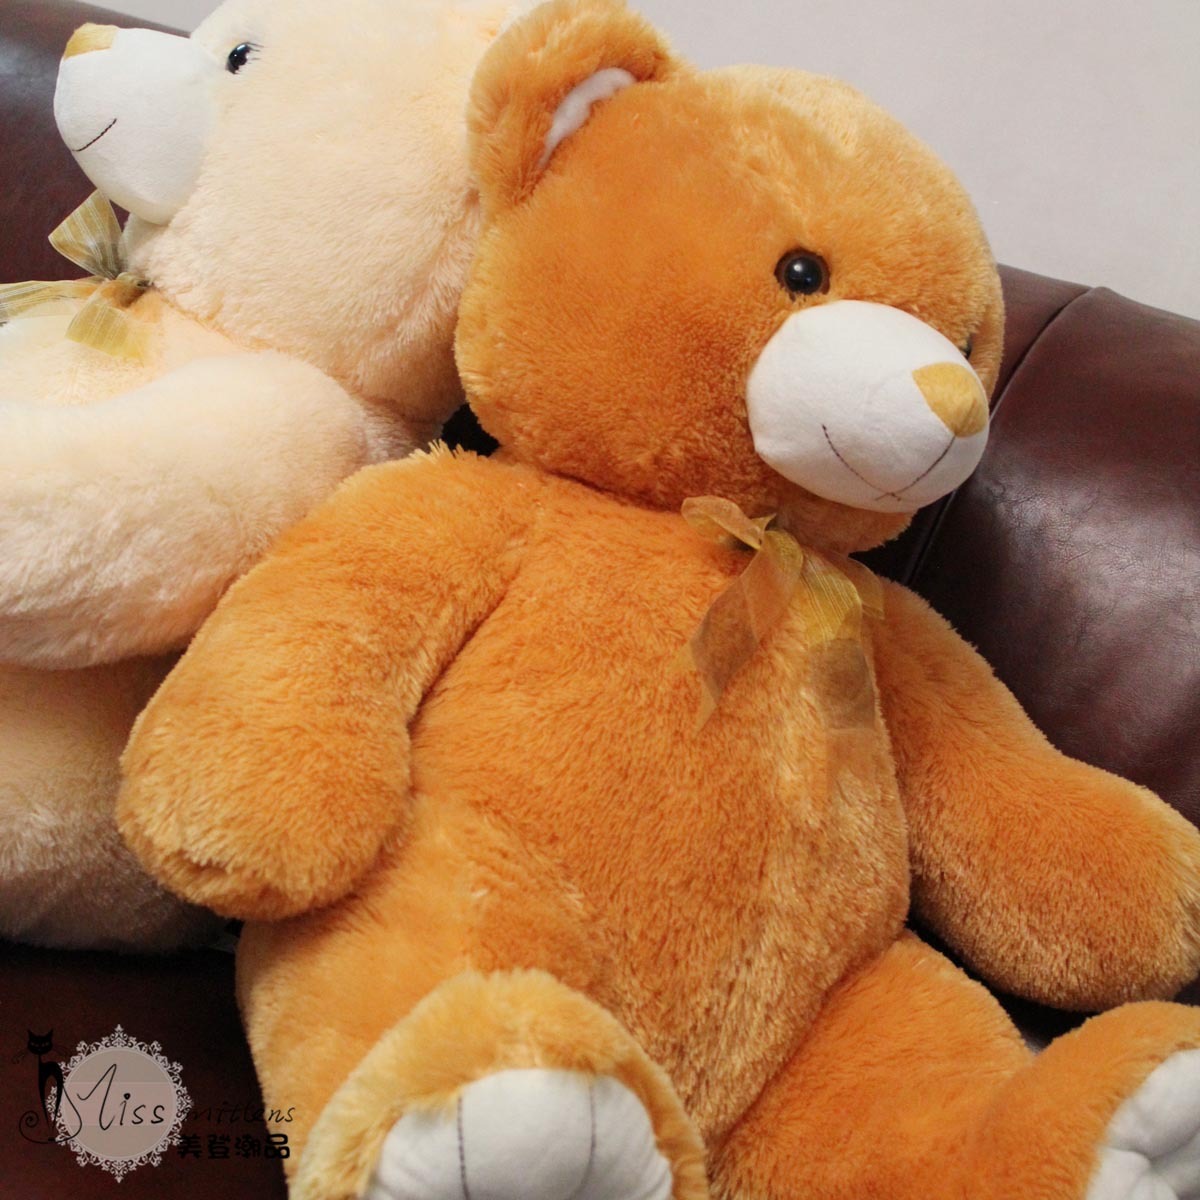 七夕情人节礼物沃尔玛可爱憨憨熊毛绒玩具情侣熊 抱抱熊公仔布娃